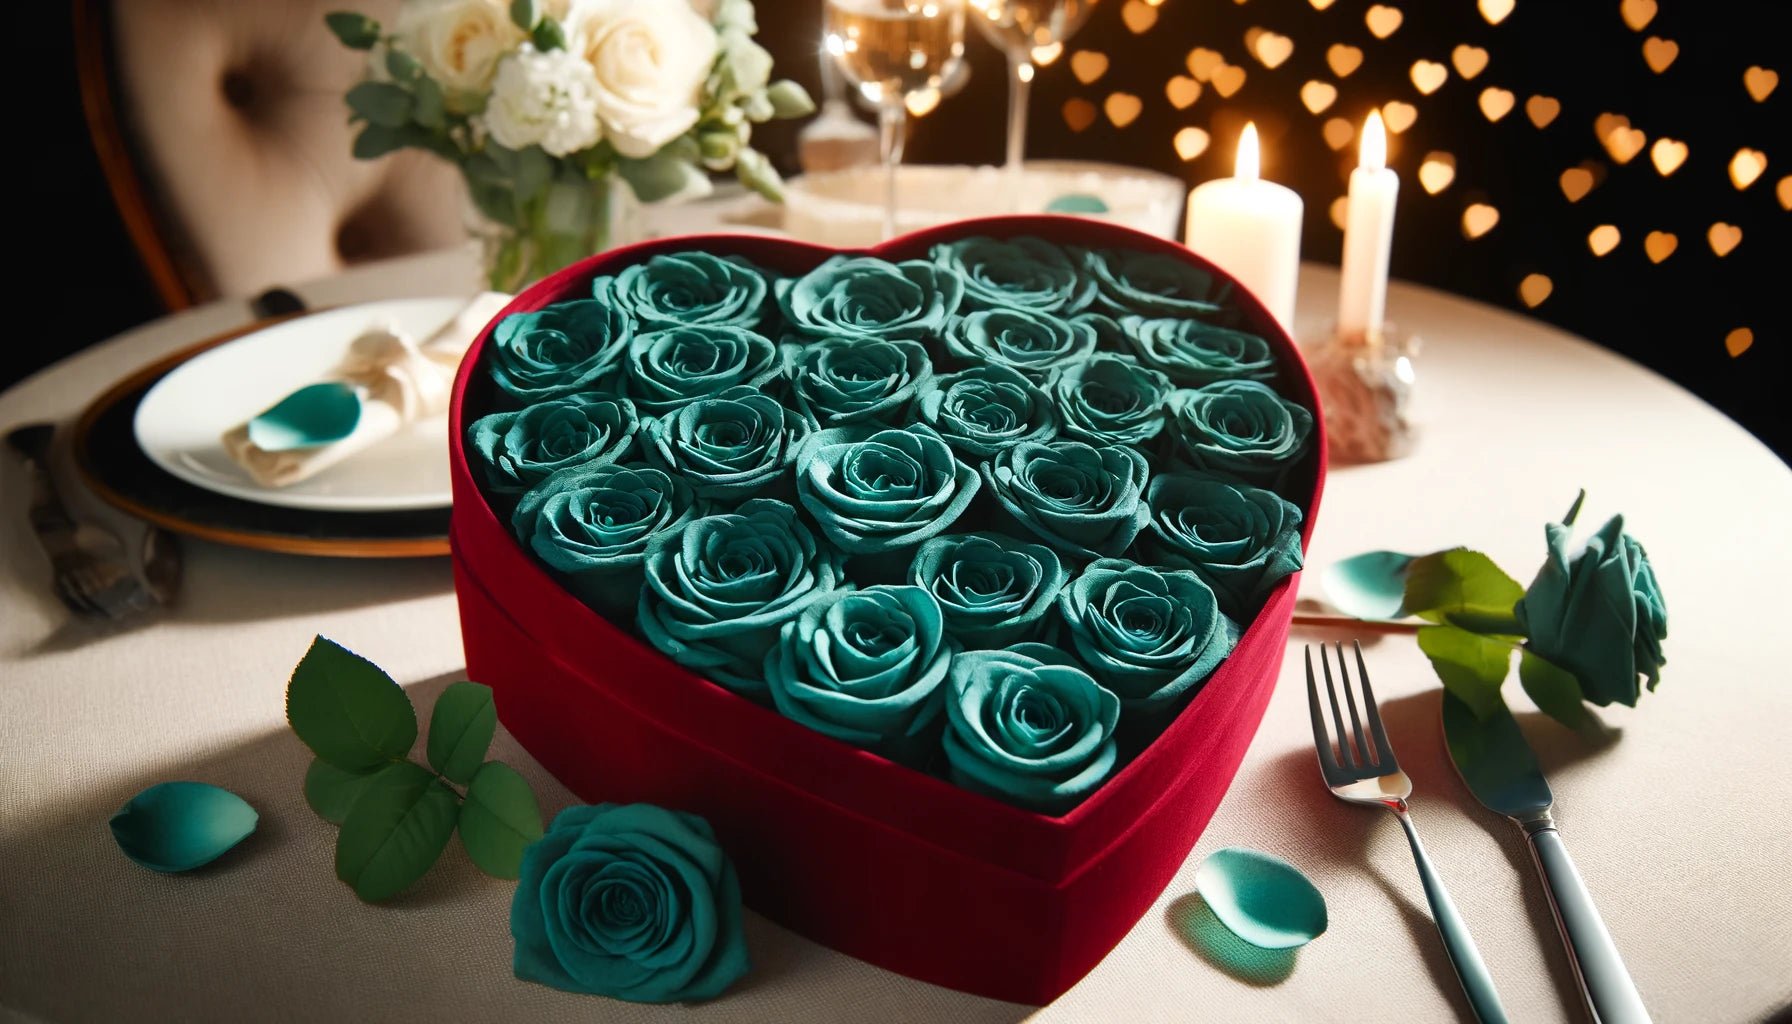 Teal Forever Roses in Heart-Shaped Velvet Box - Imaginary Worlds